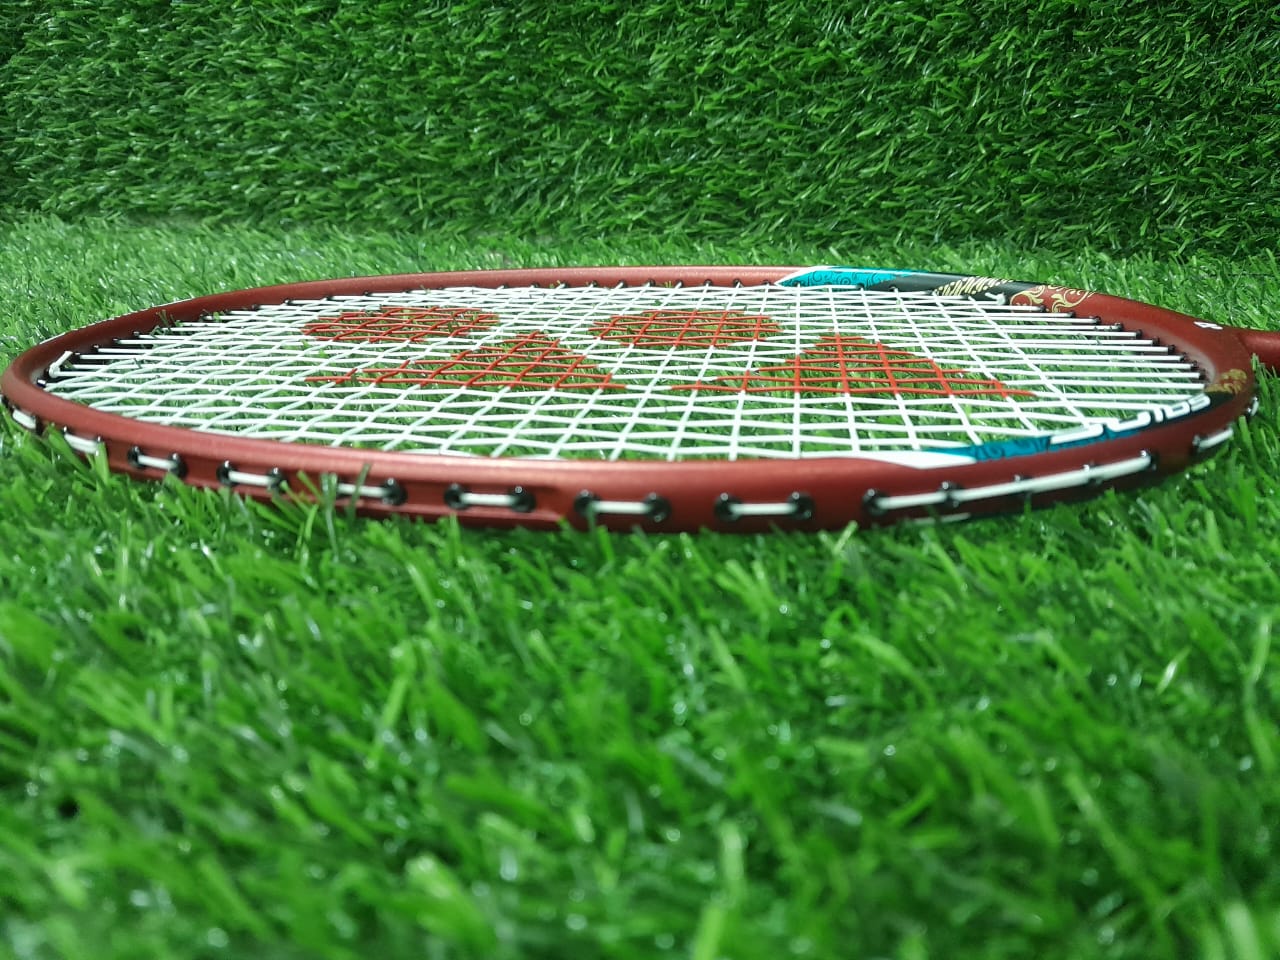 Yonex Ascsaber 73 light Badminton Racket